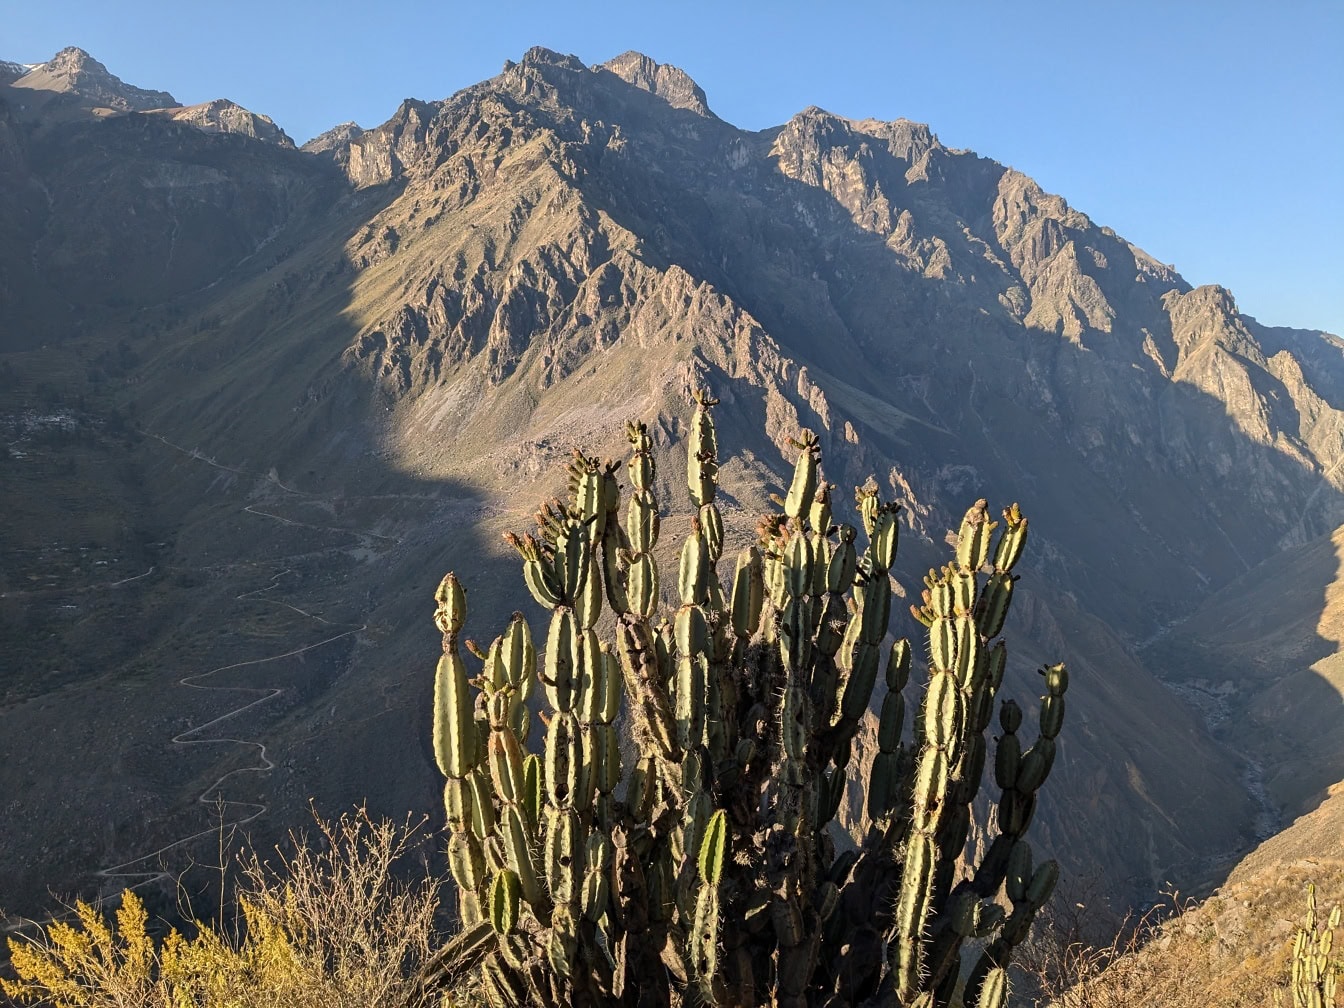 Kaktus zvan kaktus peruanske jabuke (Cereus repandus) ispred planine u kanjonu Colca u Peruu